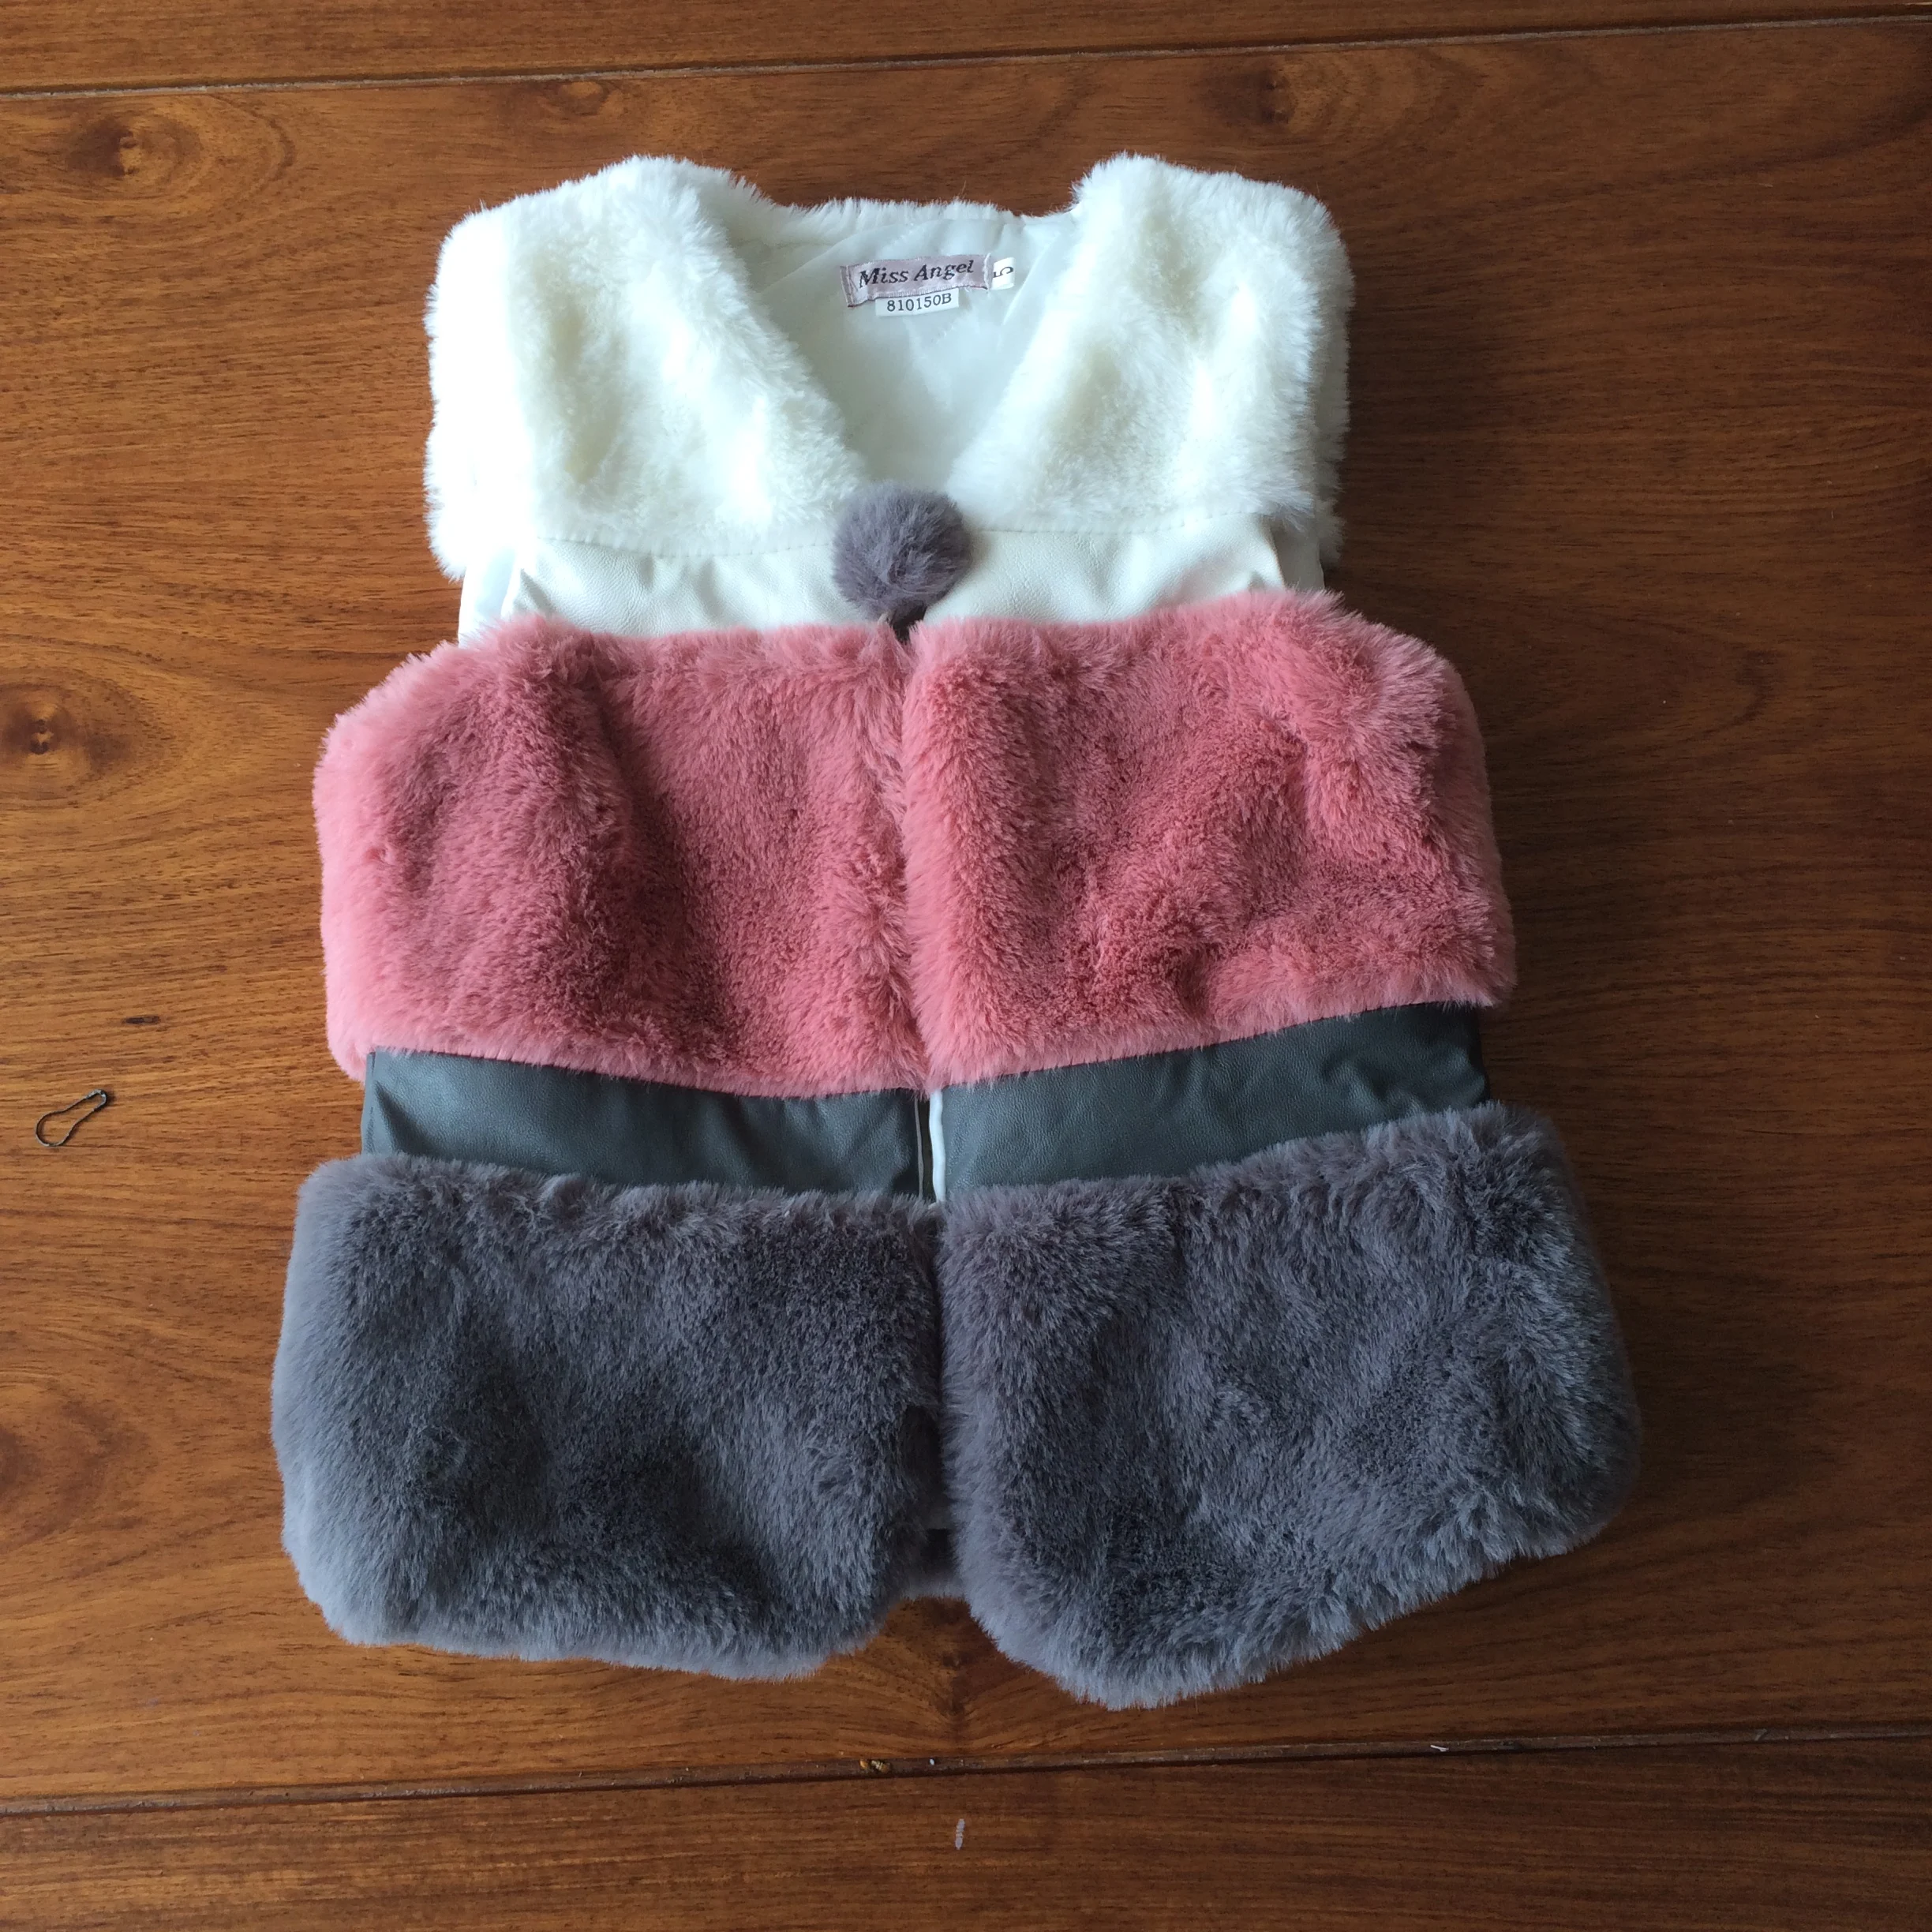 여자 니트 겉옷 아기 겨울 옷 가짜 여우 모피 조끼 여자 아이 조끼 조끼 - Buy Kids 조끼 Vest,겉 옷 Baby Winter  옷,Girls Rabbit Fur Vest Product on Alibaba.com